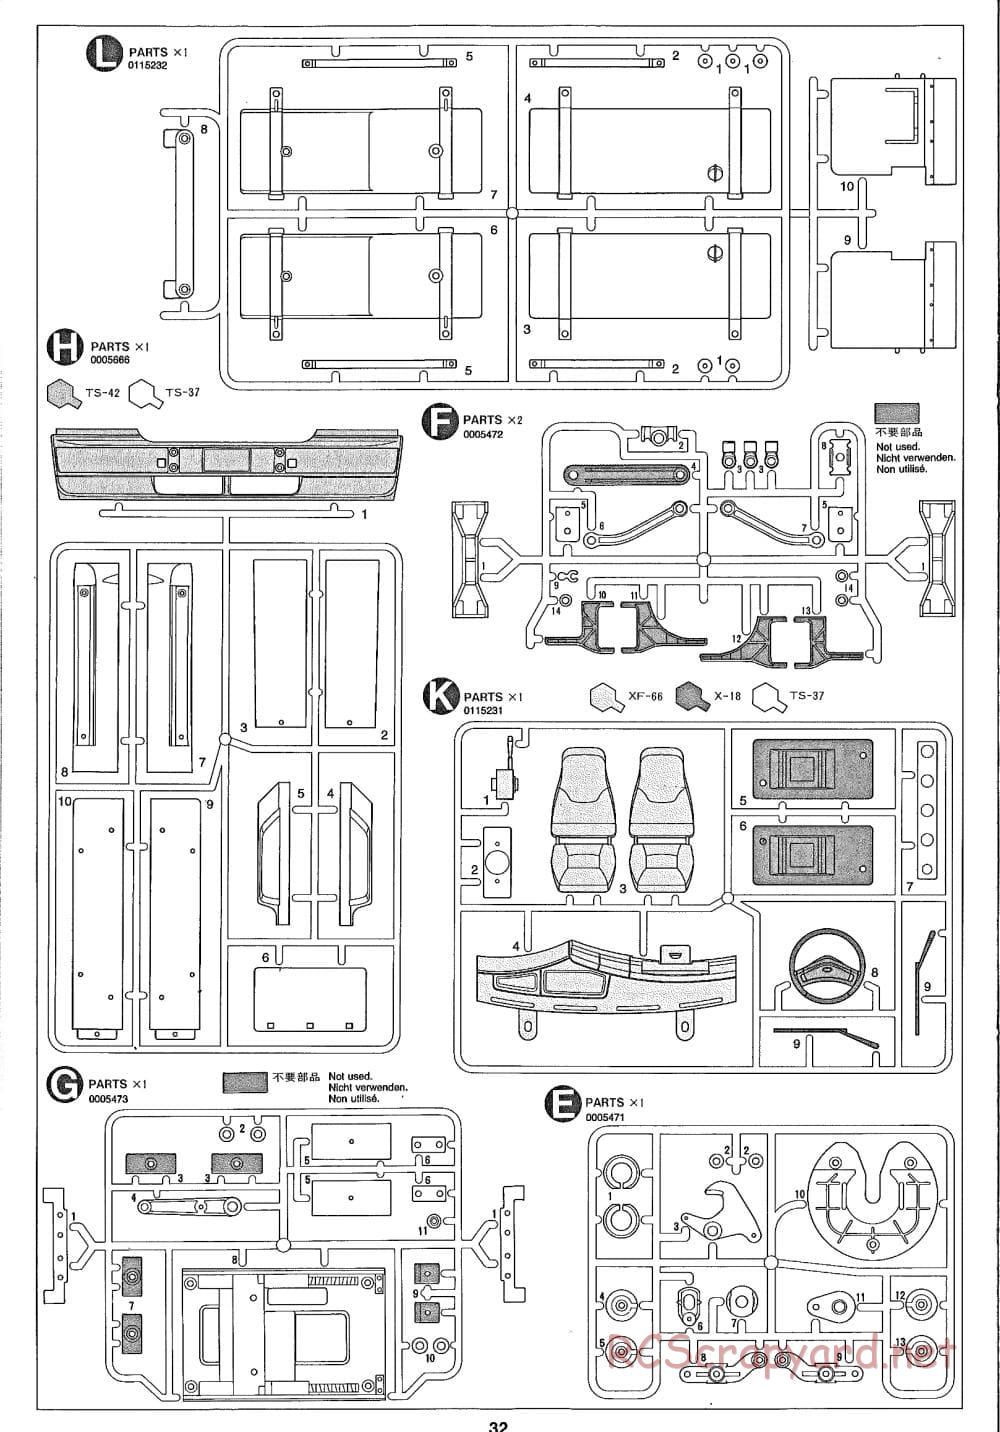 Tamiya - Ford Aeromax - Manual - Page 32